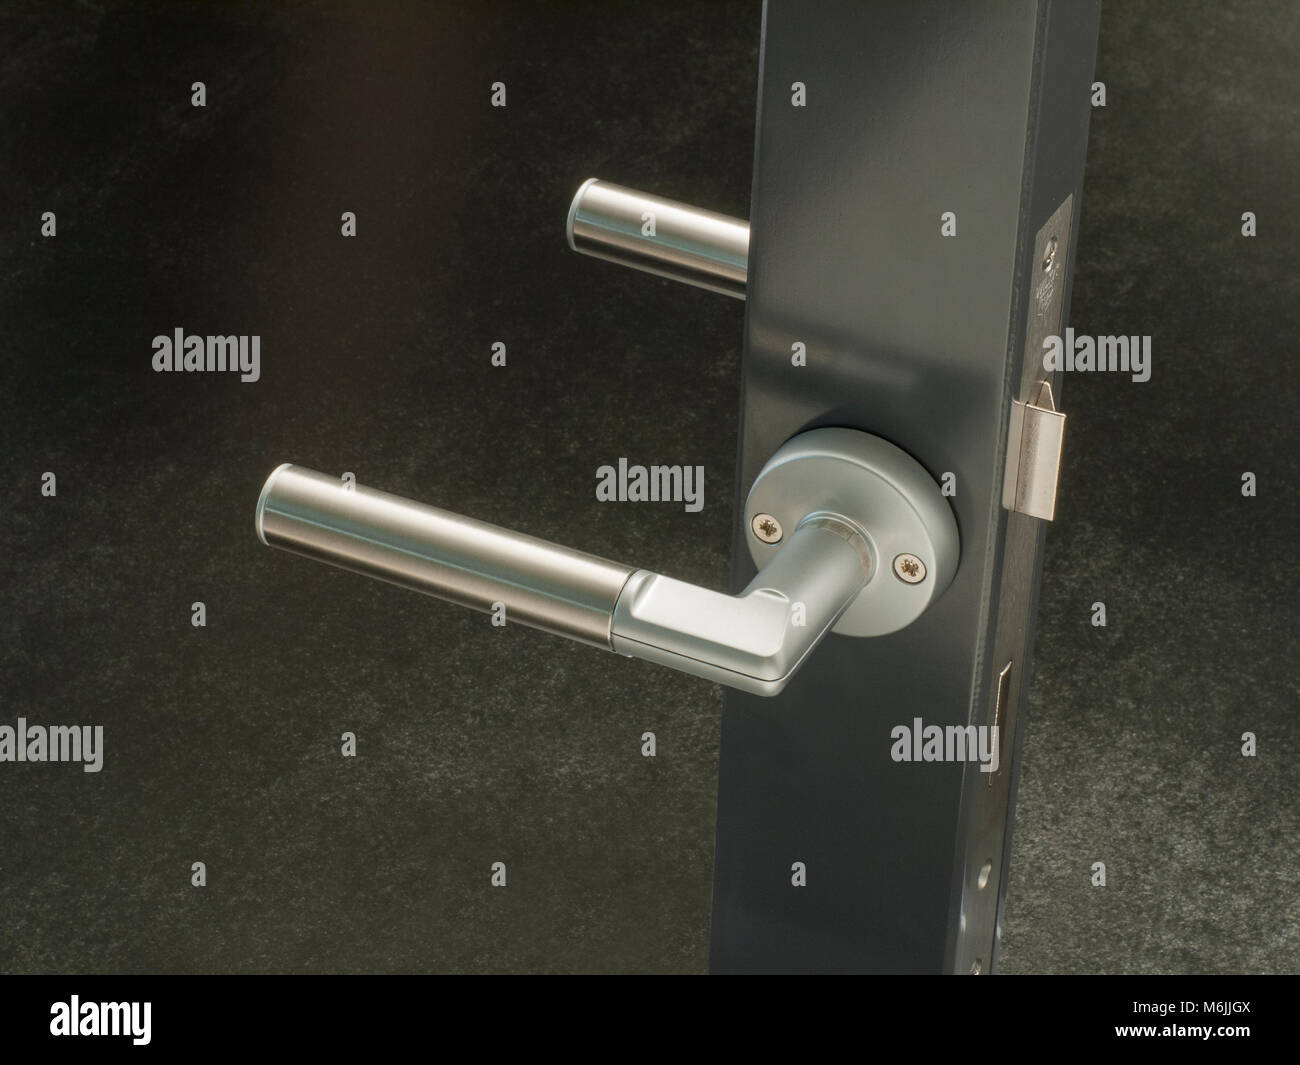 Door handle with digital code access. Stock Photo